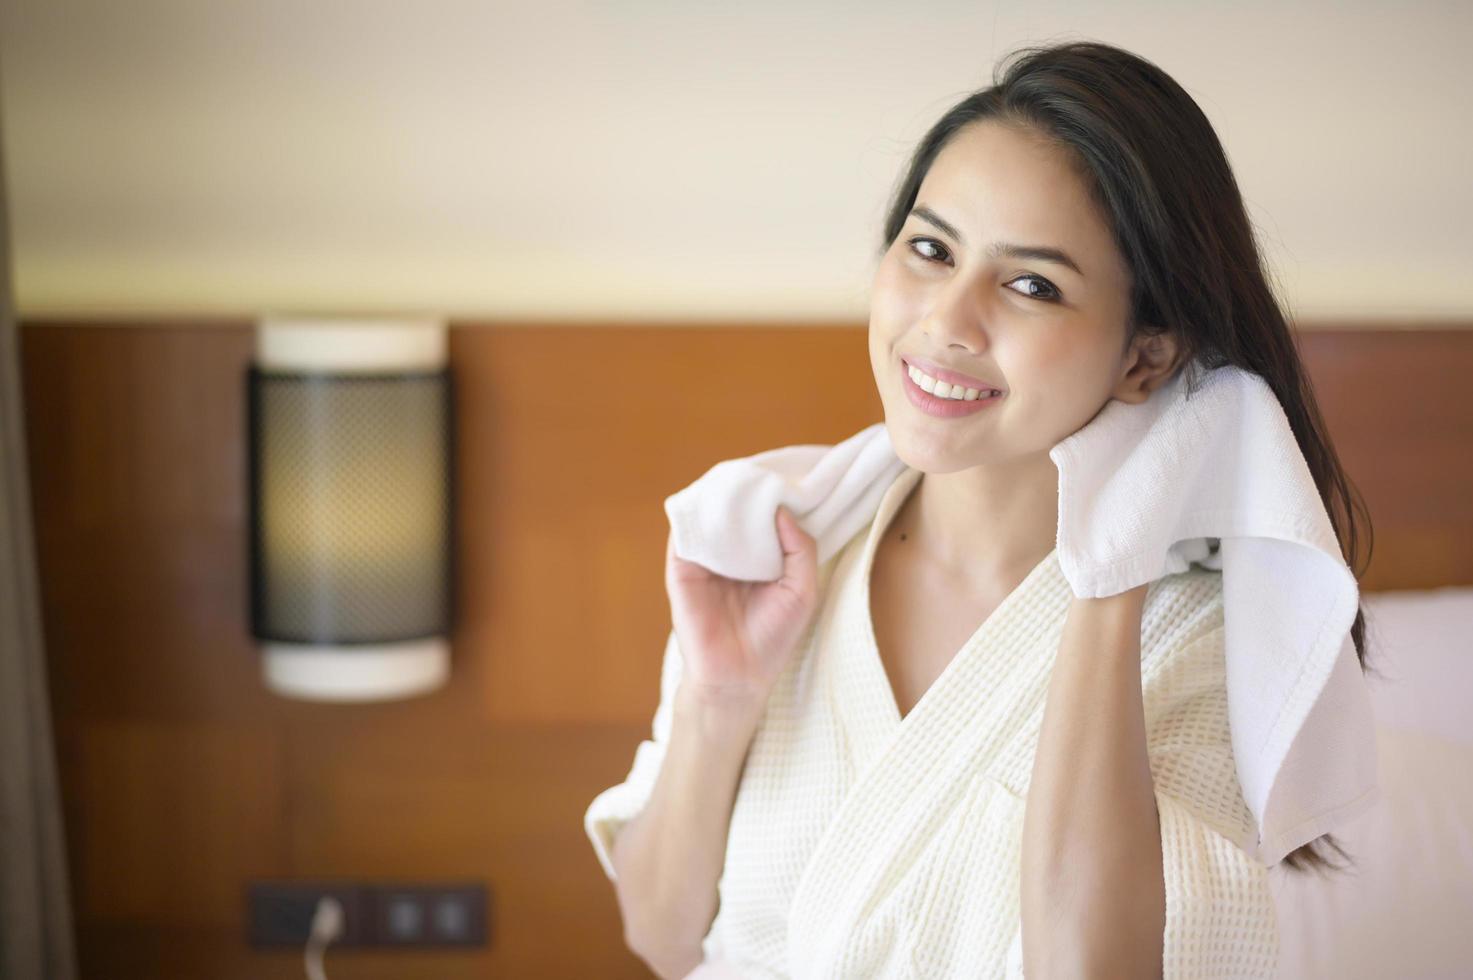 giovane donna sorridente che indossa un accappatoio bianco che si pulisce i capelli con un asciugamano dopo la doccia in camera da letto foto